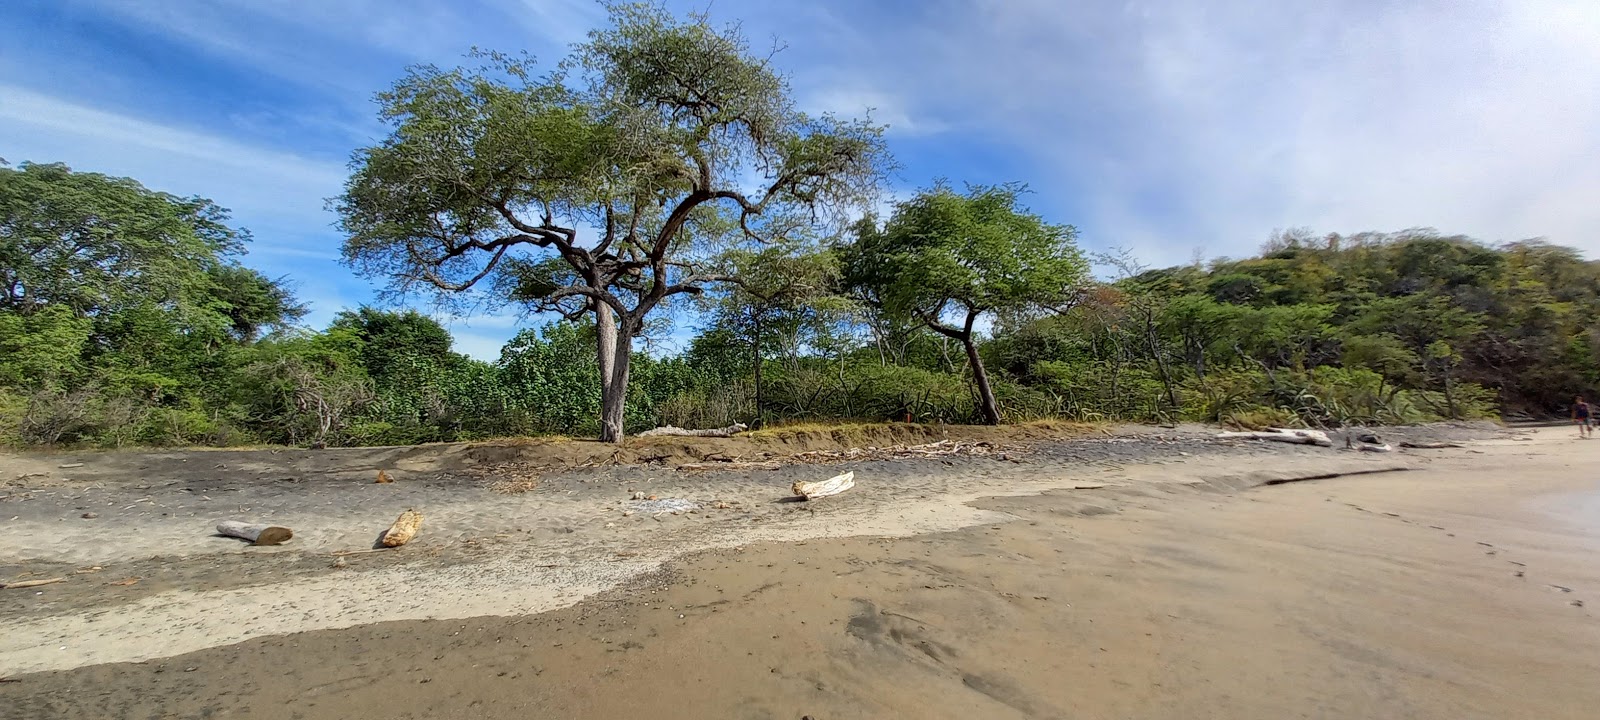 Zdjęcie Playa Grande z poziomem czystości wysoki